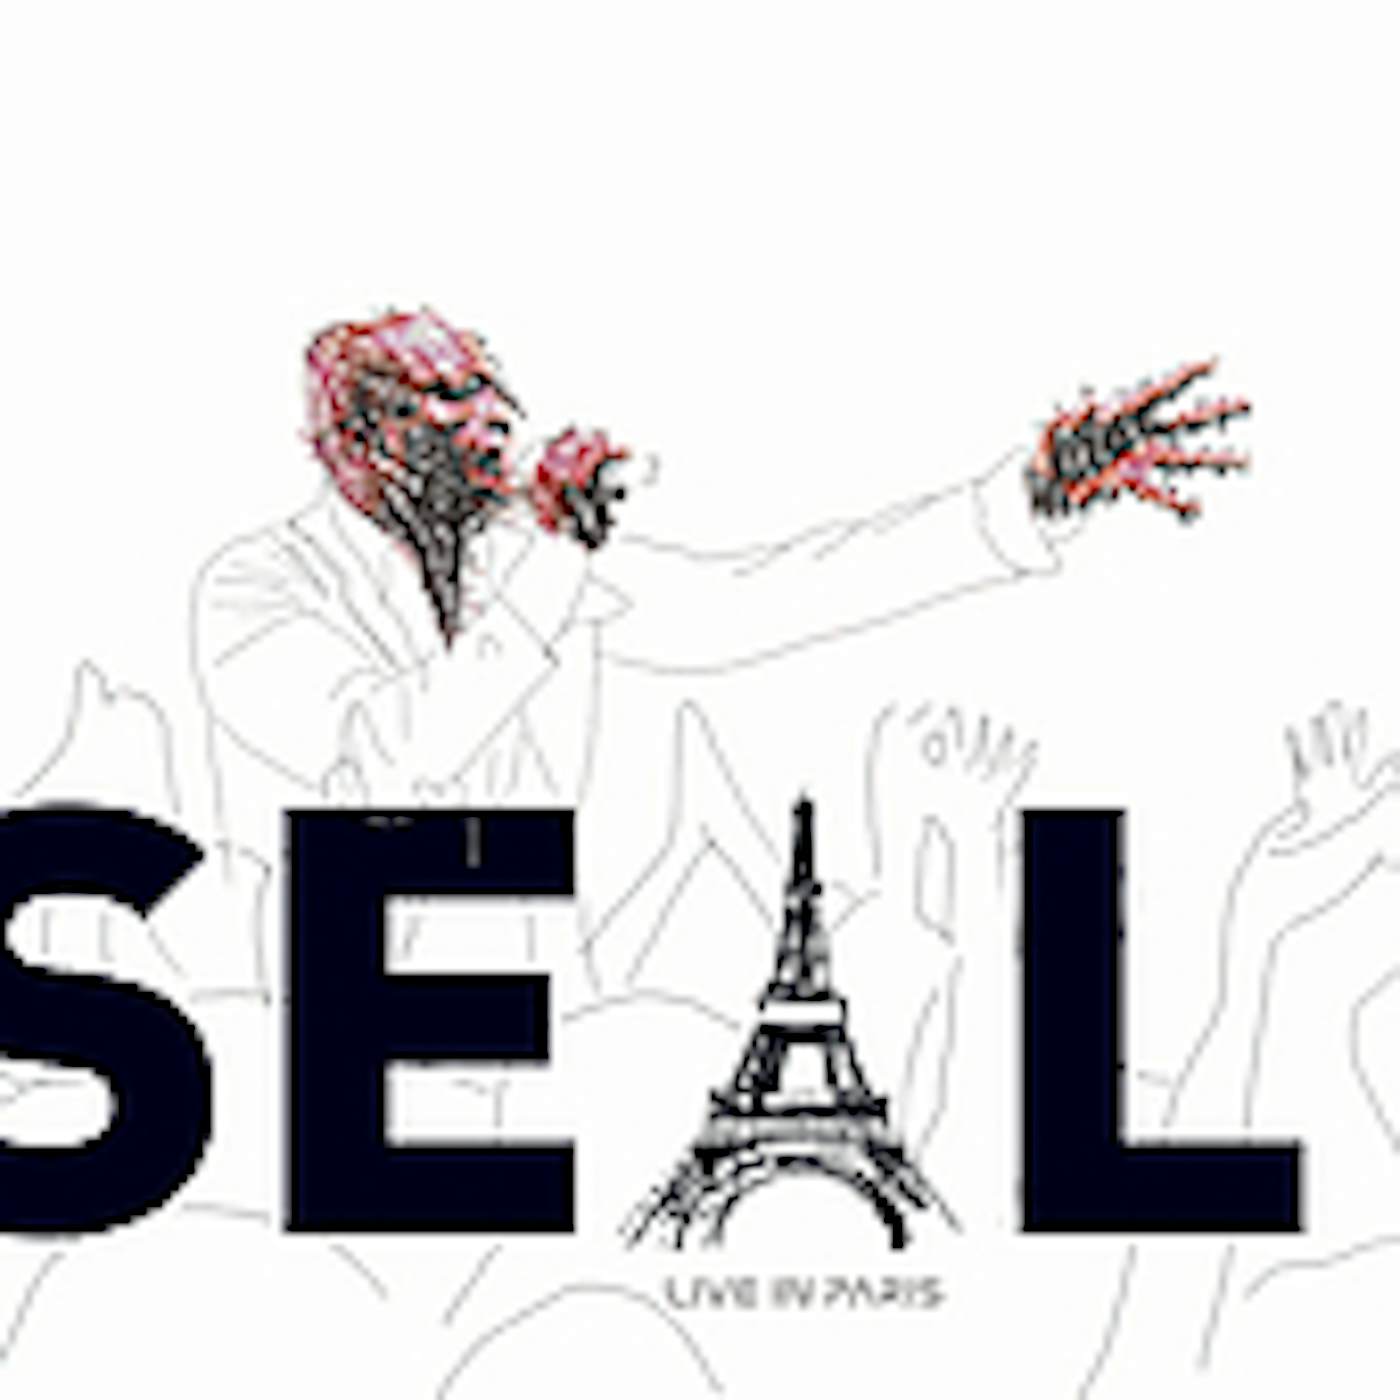 Seal LIVE IN PARIS CD